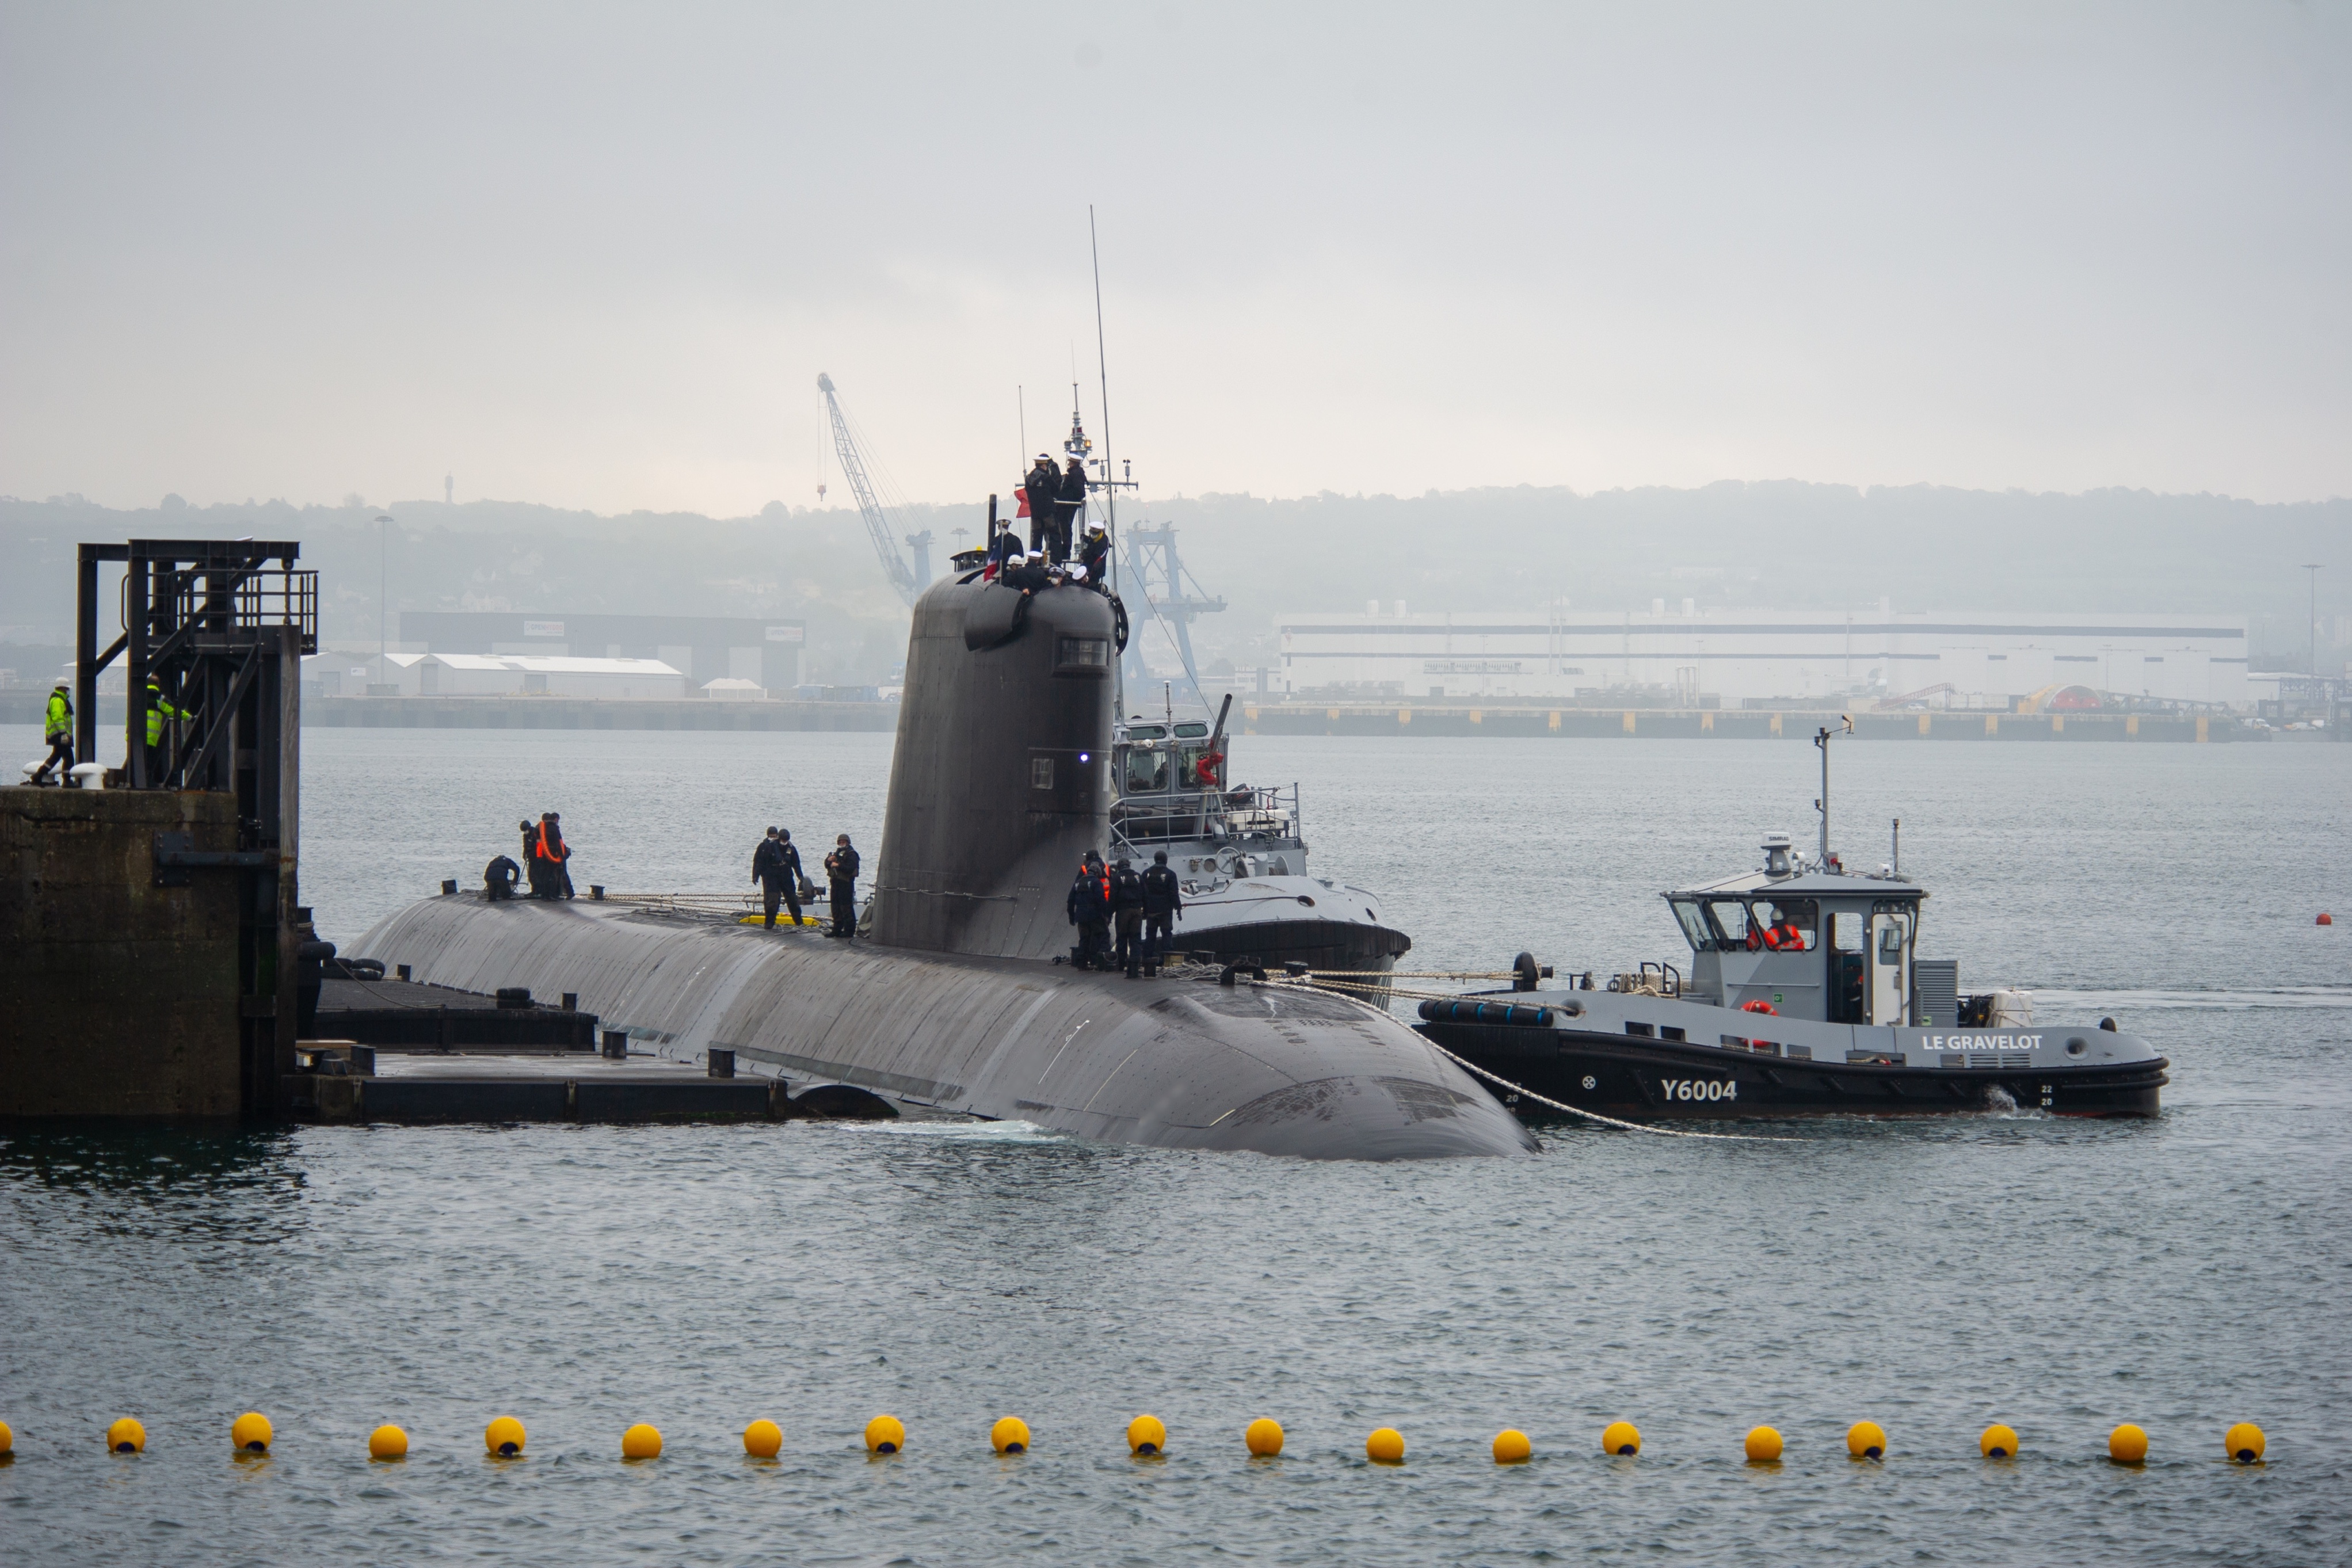 原创 法国最新核潜艇开始试航!建造长达13年,一技术领先于093b